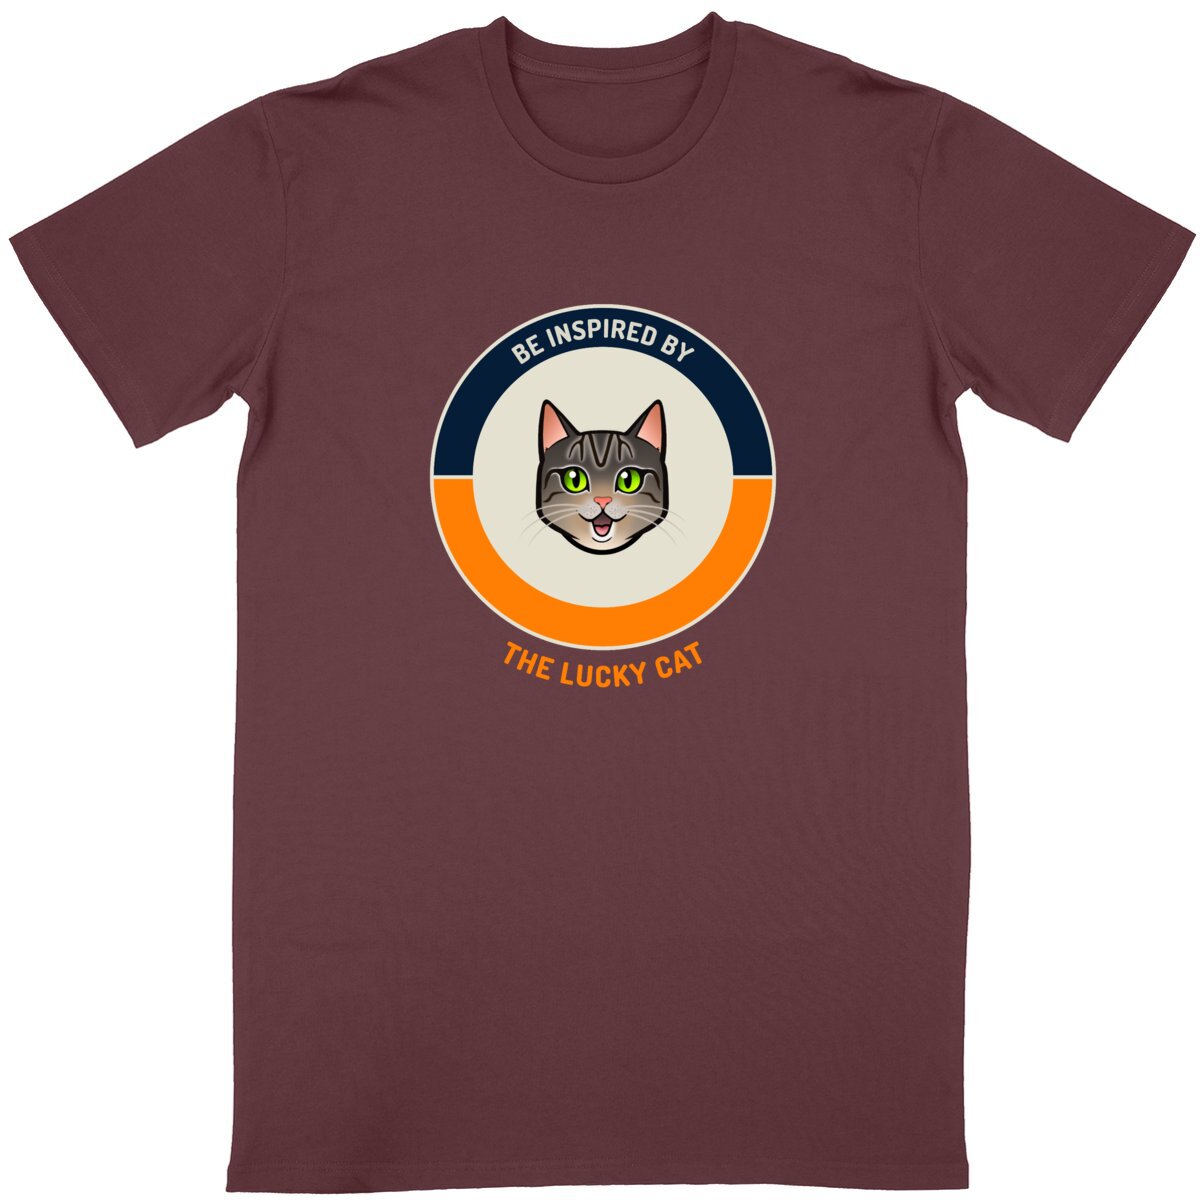 T-shirt Short-Sleeve Unisex - "The lucky cat"